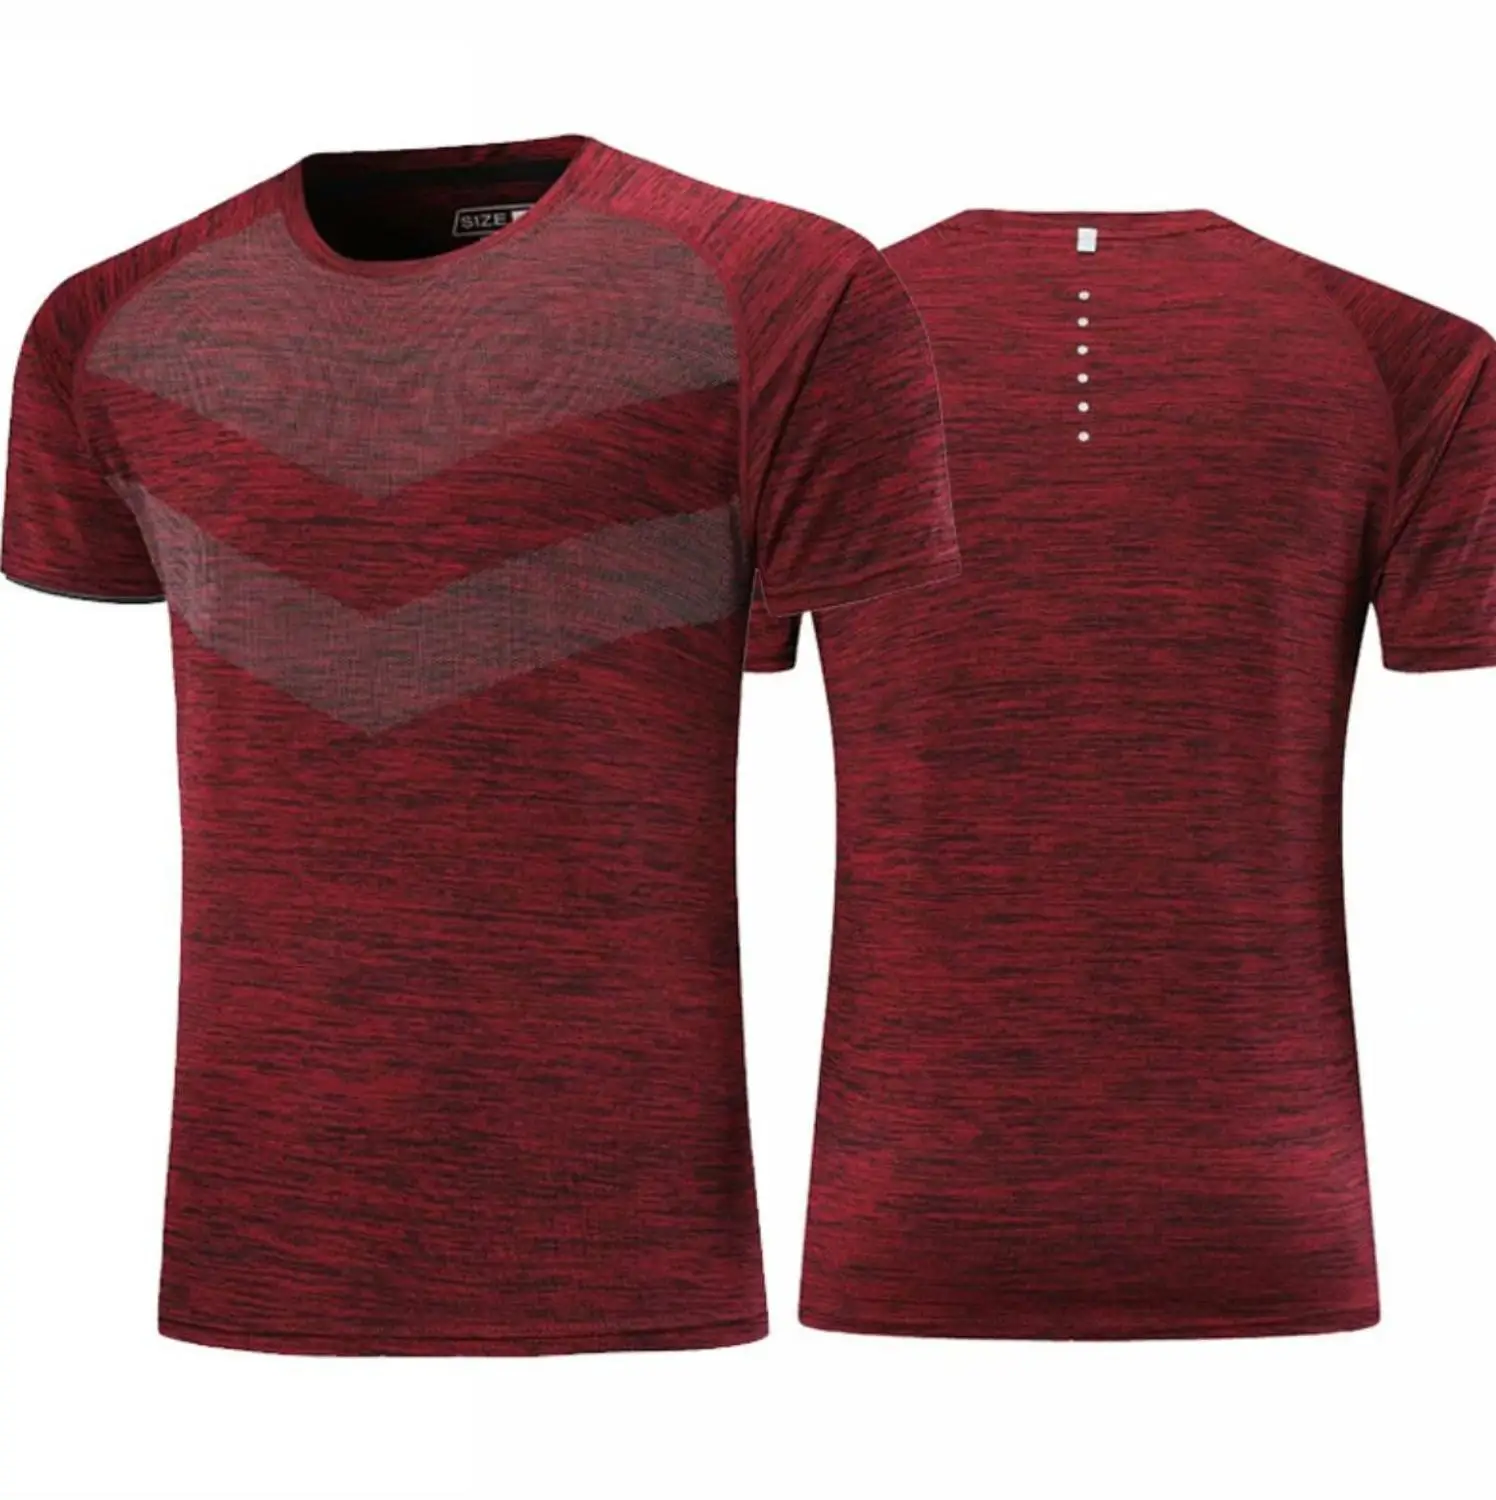 Футболка SYNSLOVE для взрослых и мужчин в горошек, летняя футболка для тренажерного зала, упражнений, бега, фитнеса, тренировки, Спортивная футболка с коротким рукавом размера плюс, одноцветная - Цвет: Красный